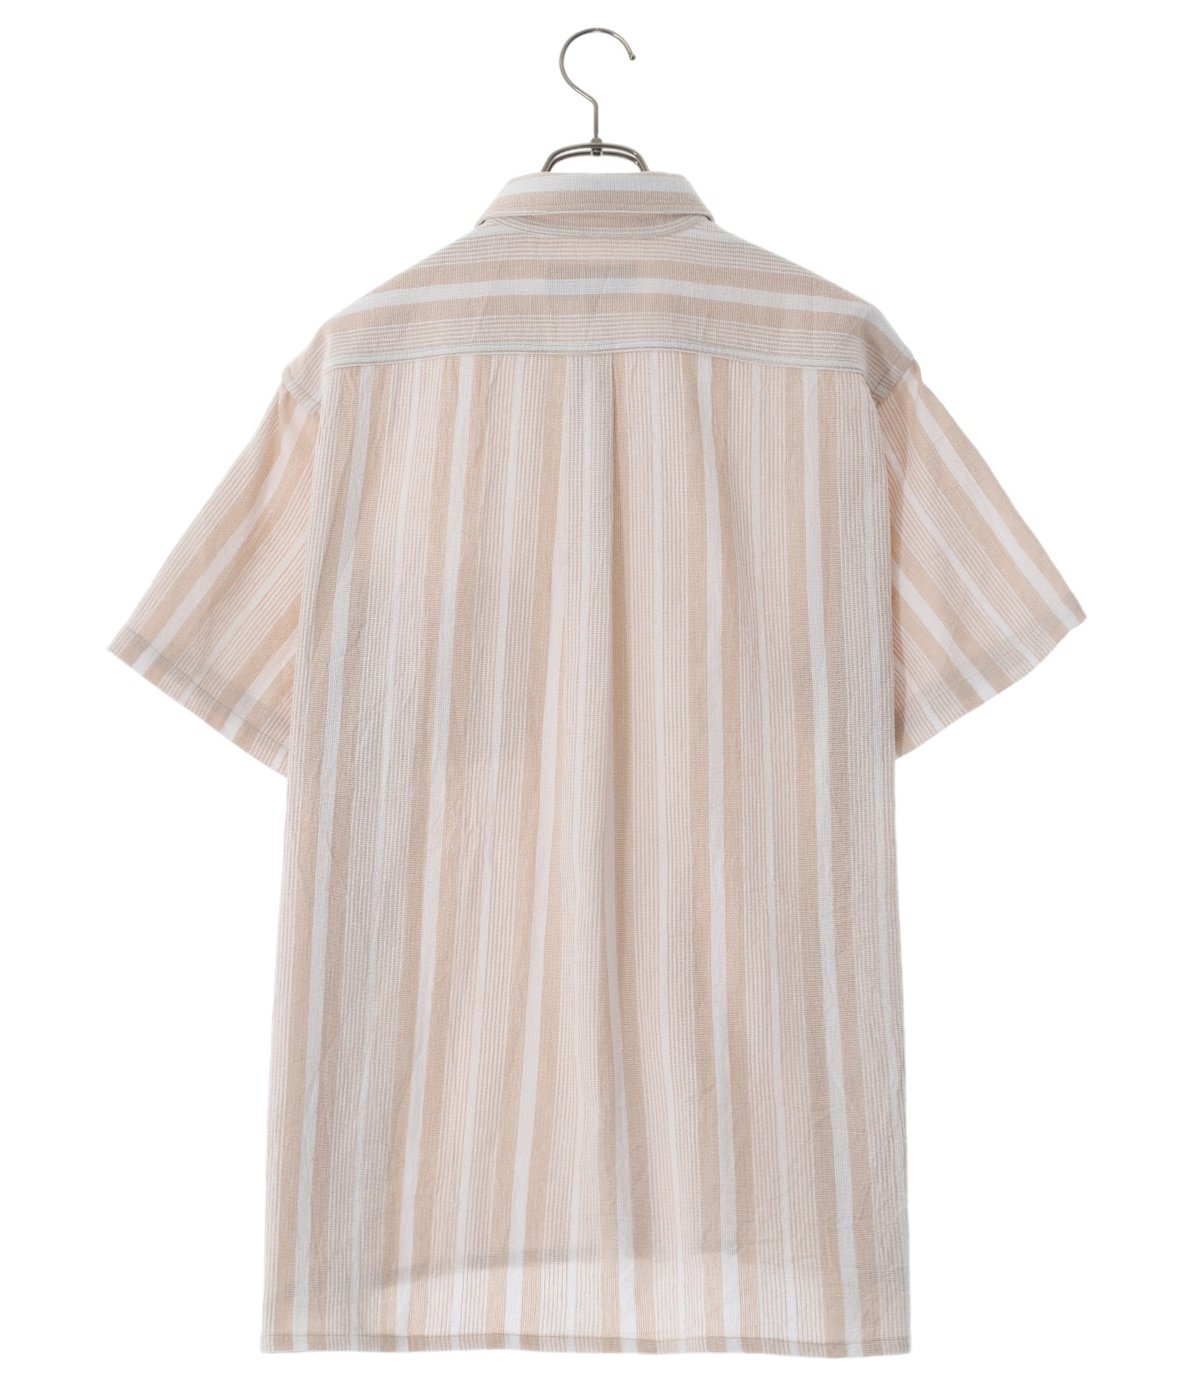 Jacquard Stripe S/S Shirt | BOTT(ボット) / トップス 半袖シャツ ...